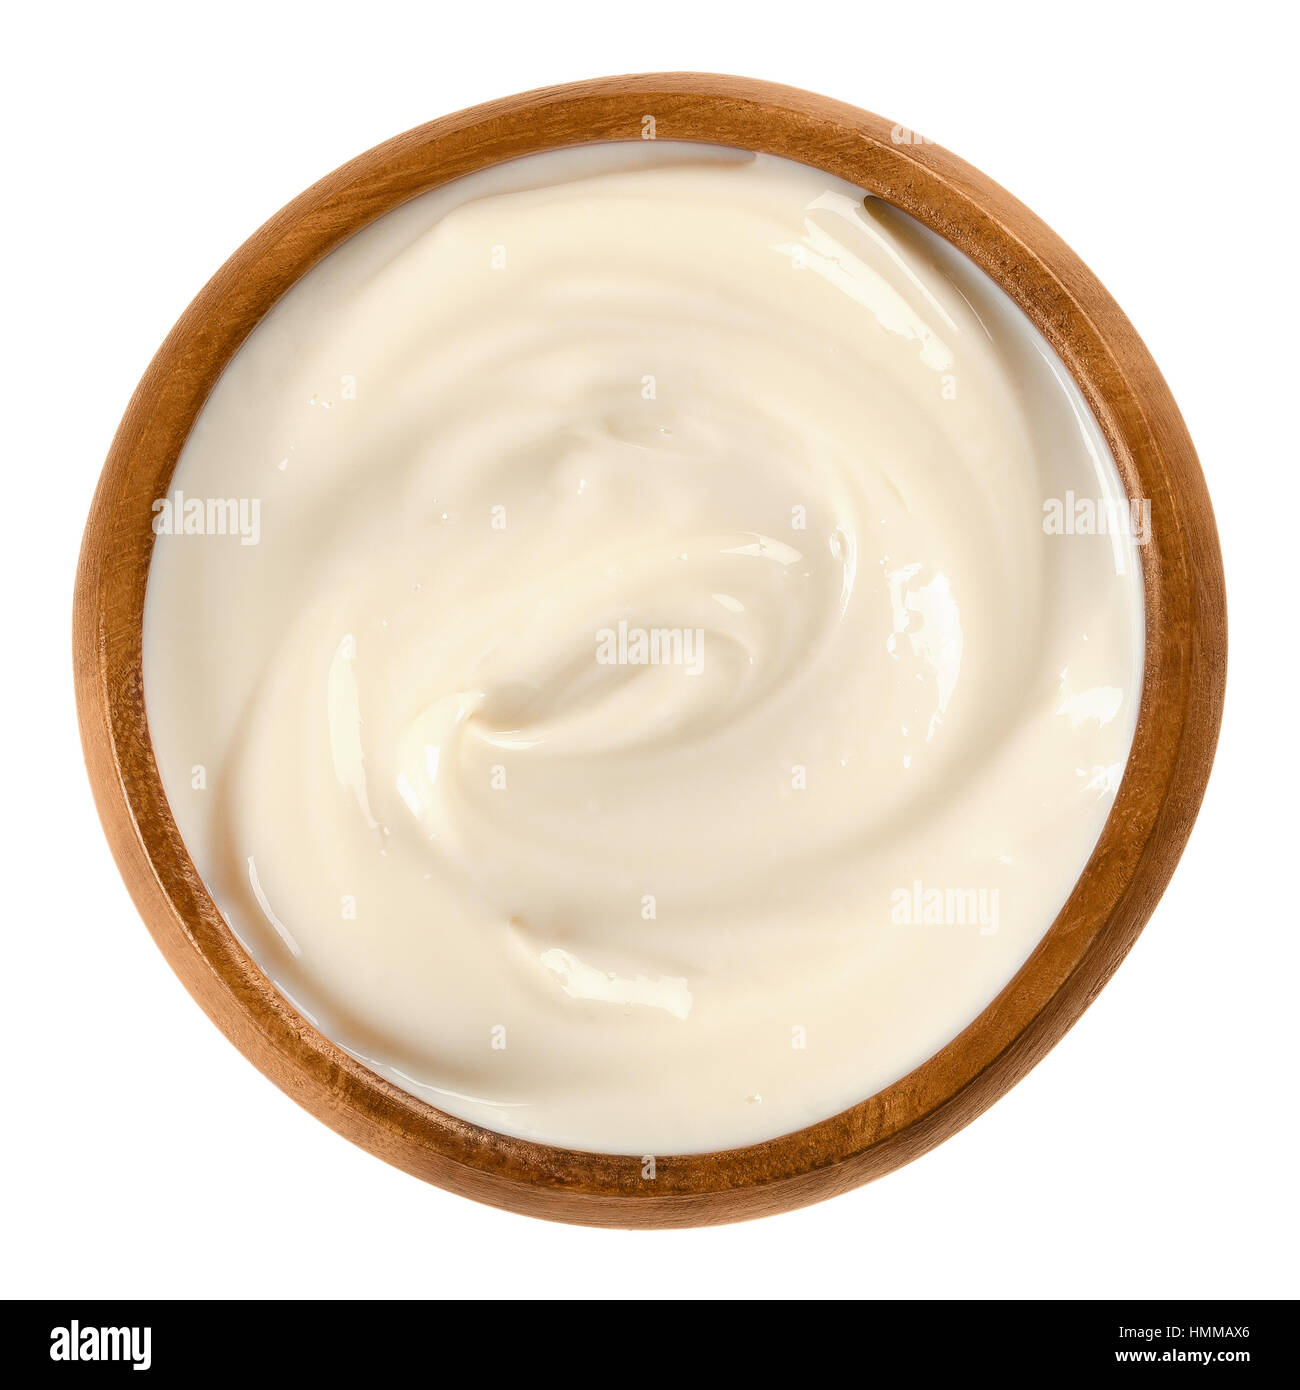 La maionese in ciotola di legno, anche mayo, un color giallo paglierino, densa e cremosa medicazione, spesso usato come condimento. Emulsione di olio e tuorlo d'uovo. Foto Stock